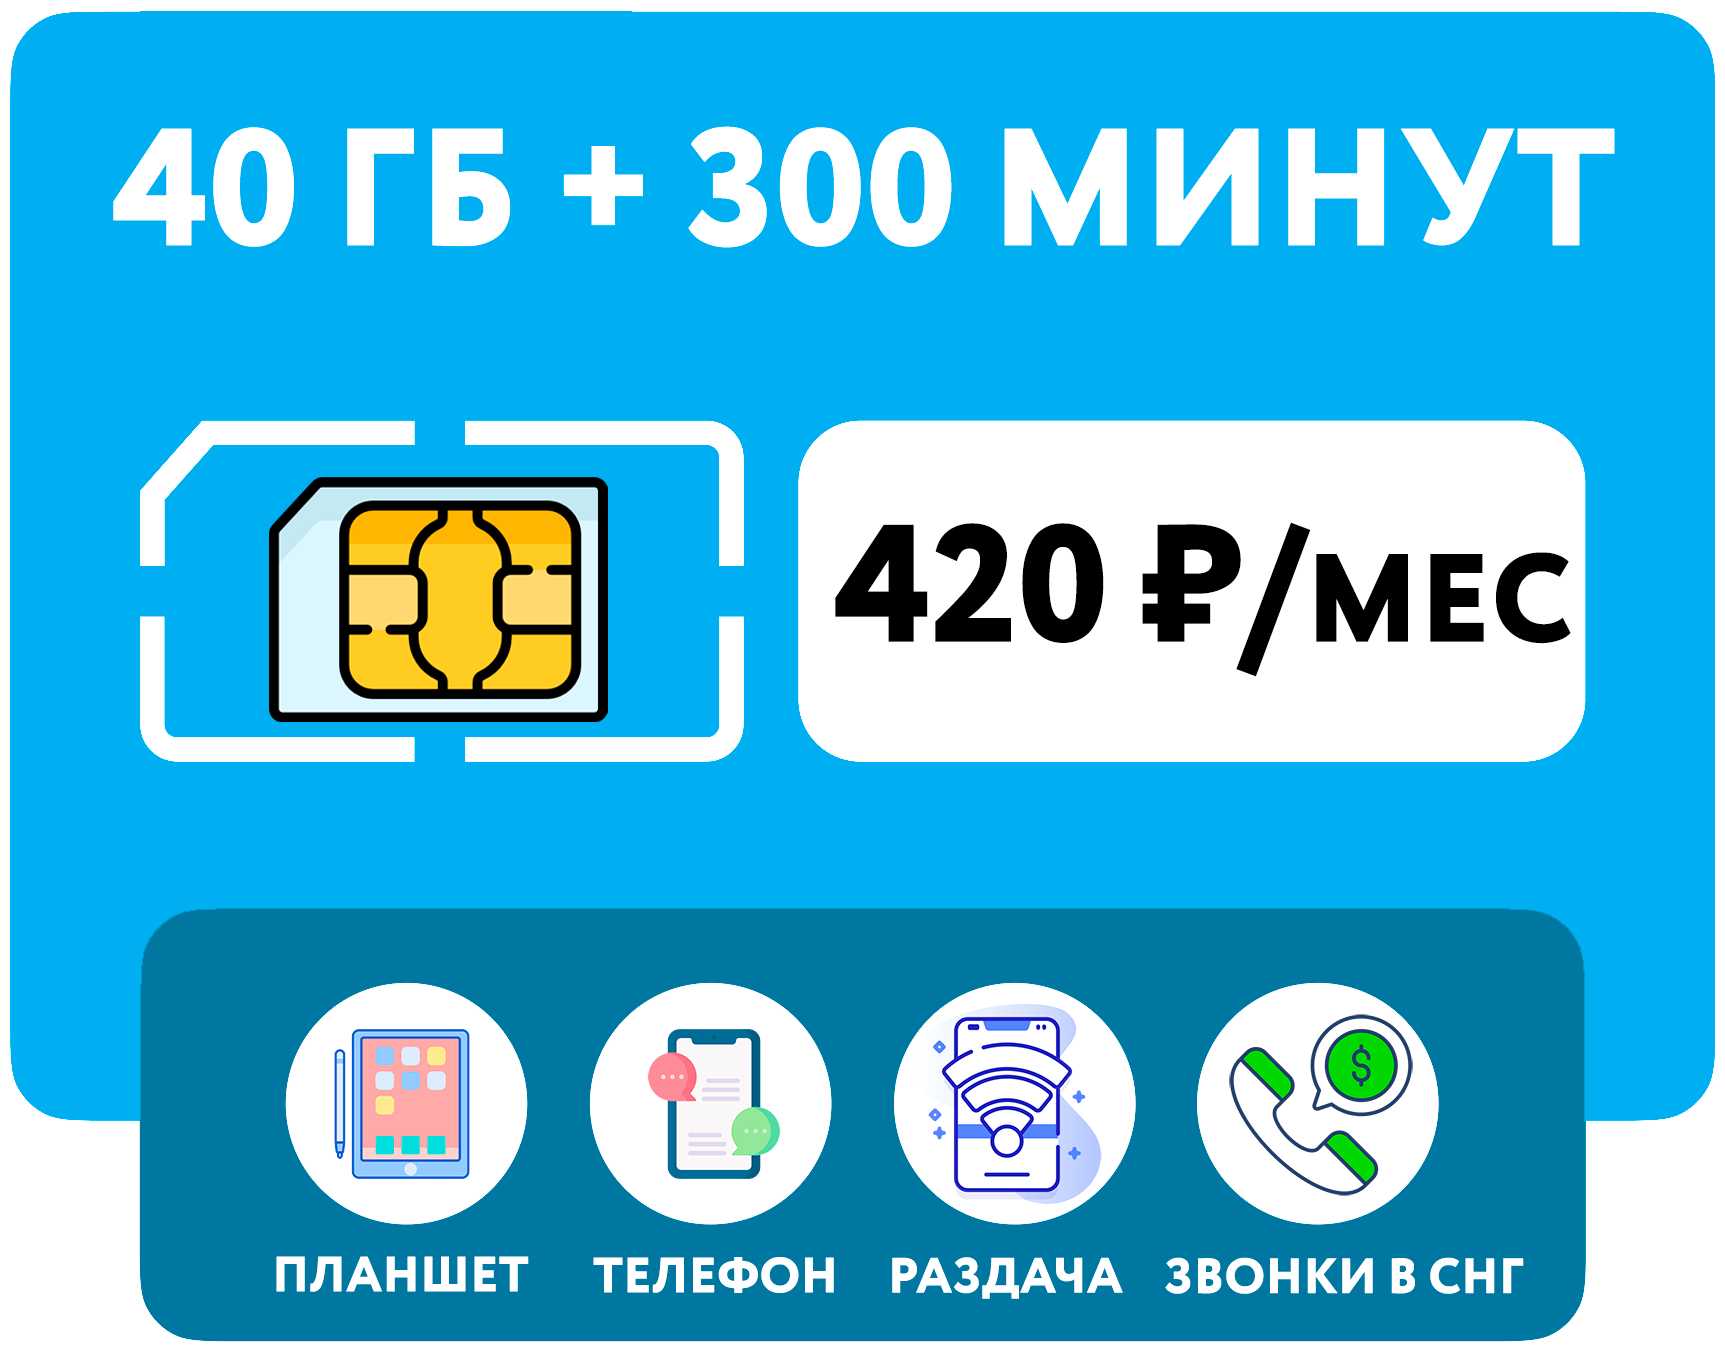 SIM-карта Йота (Yota) 300 минут + 40 гб интернет 3G/4G + выгодные звонки в СНГ + раздача Wi-Fi (Вся Россия) за 420 руб/мес